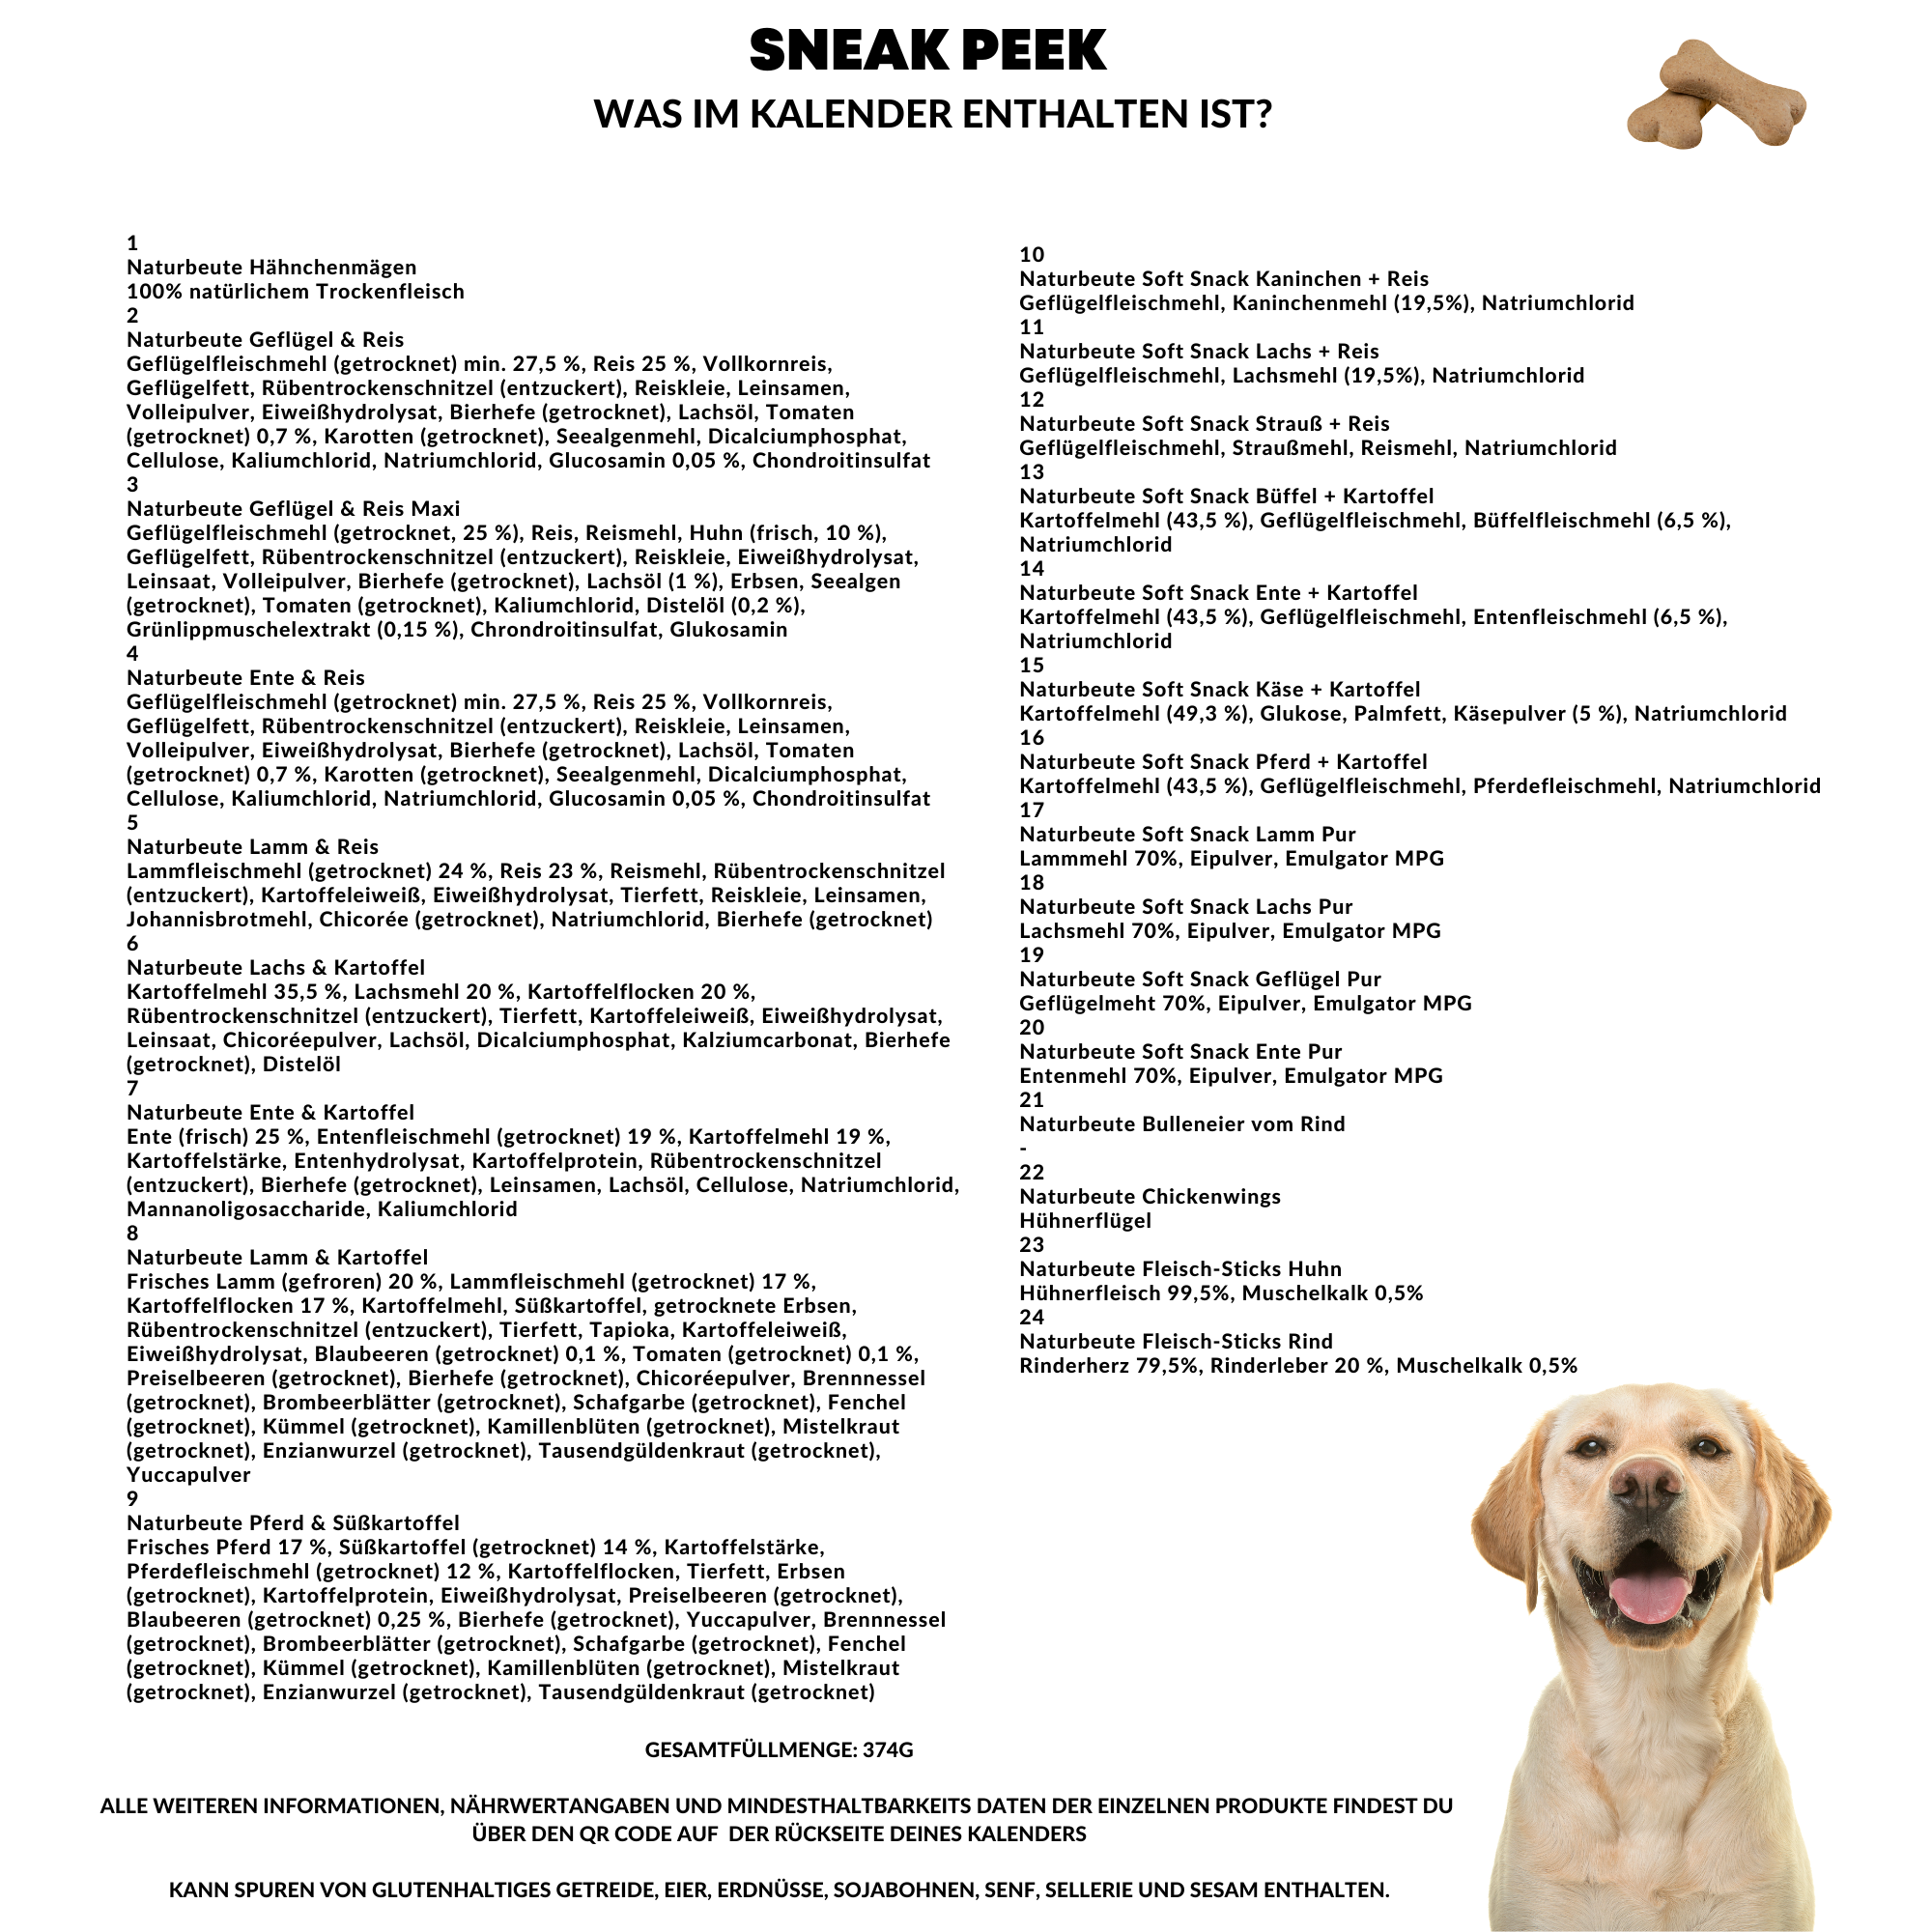 Hunde Adventskalender 2023 mit 24 Leckerlies für den Vierbeiner - Snack Adventskalender für Hunde mit 24 Knabberein